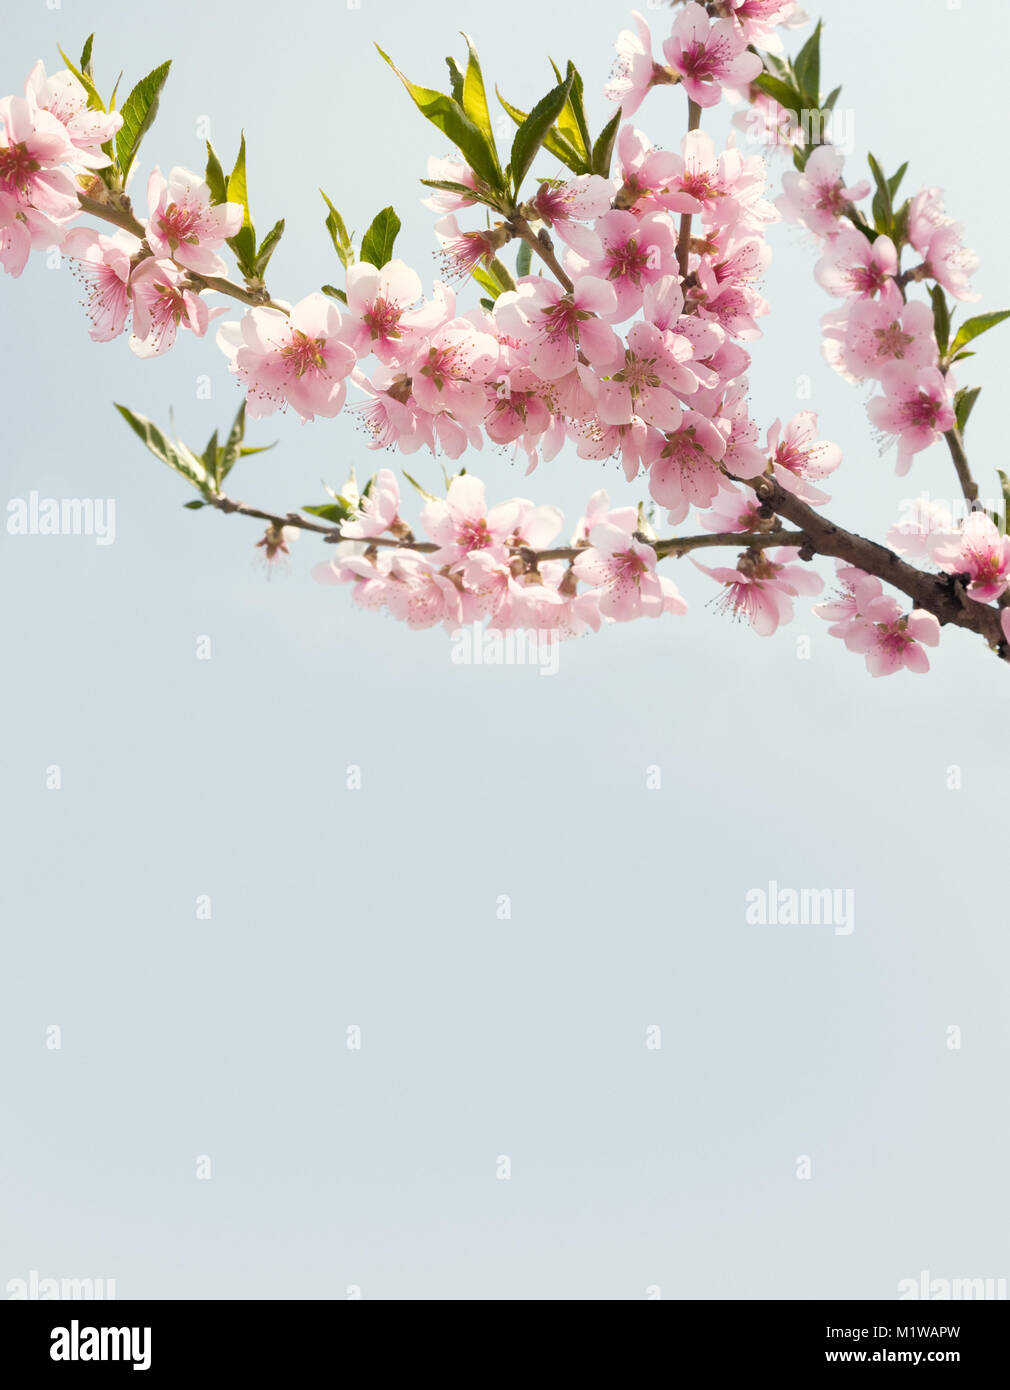 Zweige mit schönen rosa Blumen (Pfirsich) gegen den blauen Himmel. Getönten Bild. Stockfoto